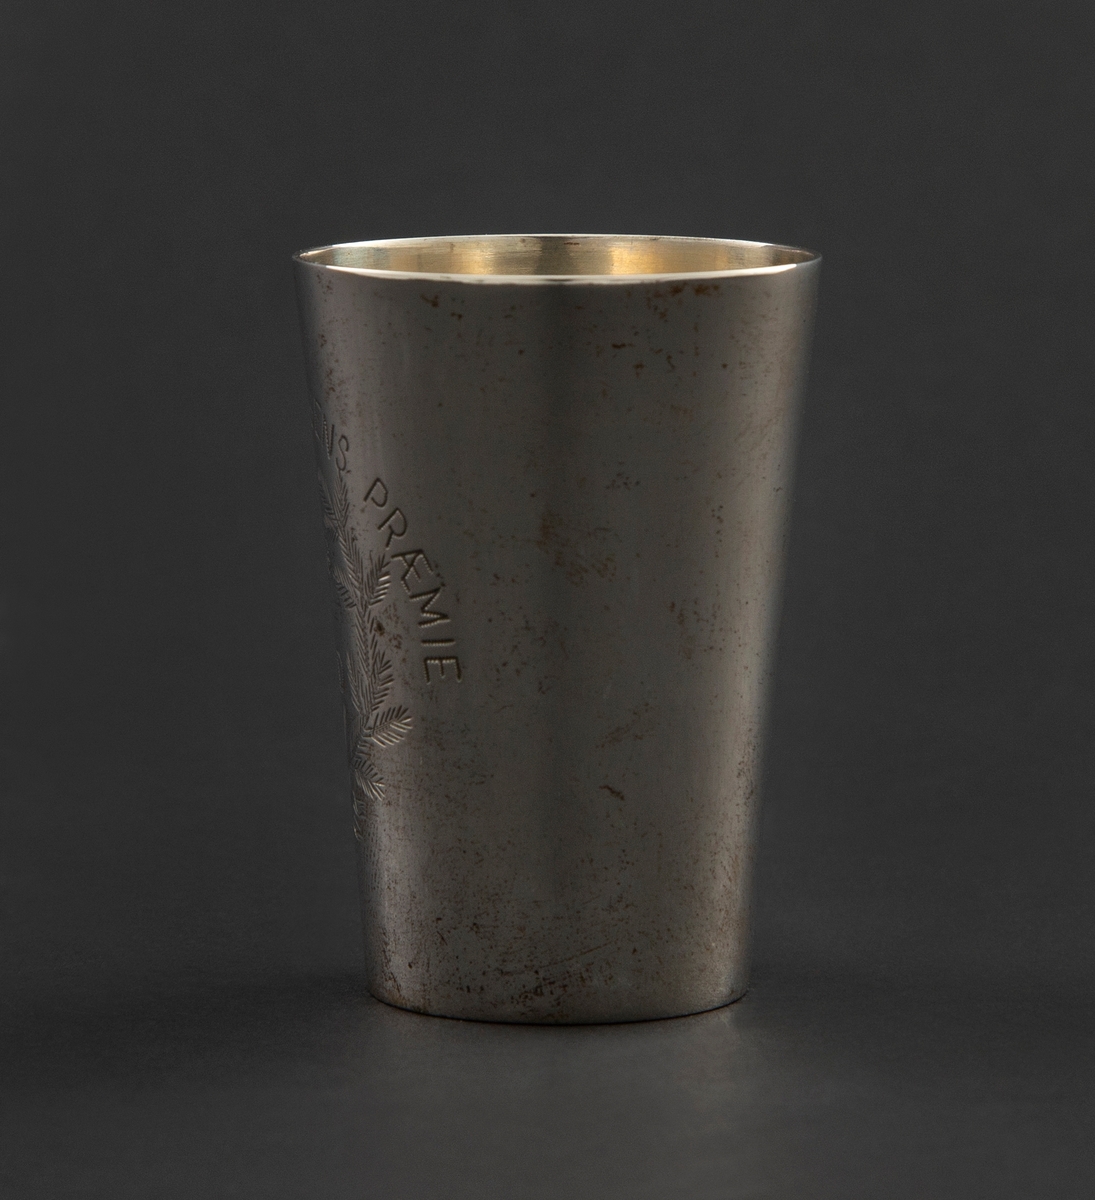 Pokal i sølv formet som et beger med svakt konisk korpus. Korpus er gravert med krans, sløyfe og stjerne sammen med innskrift.